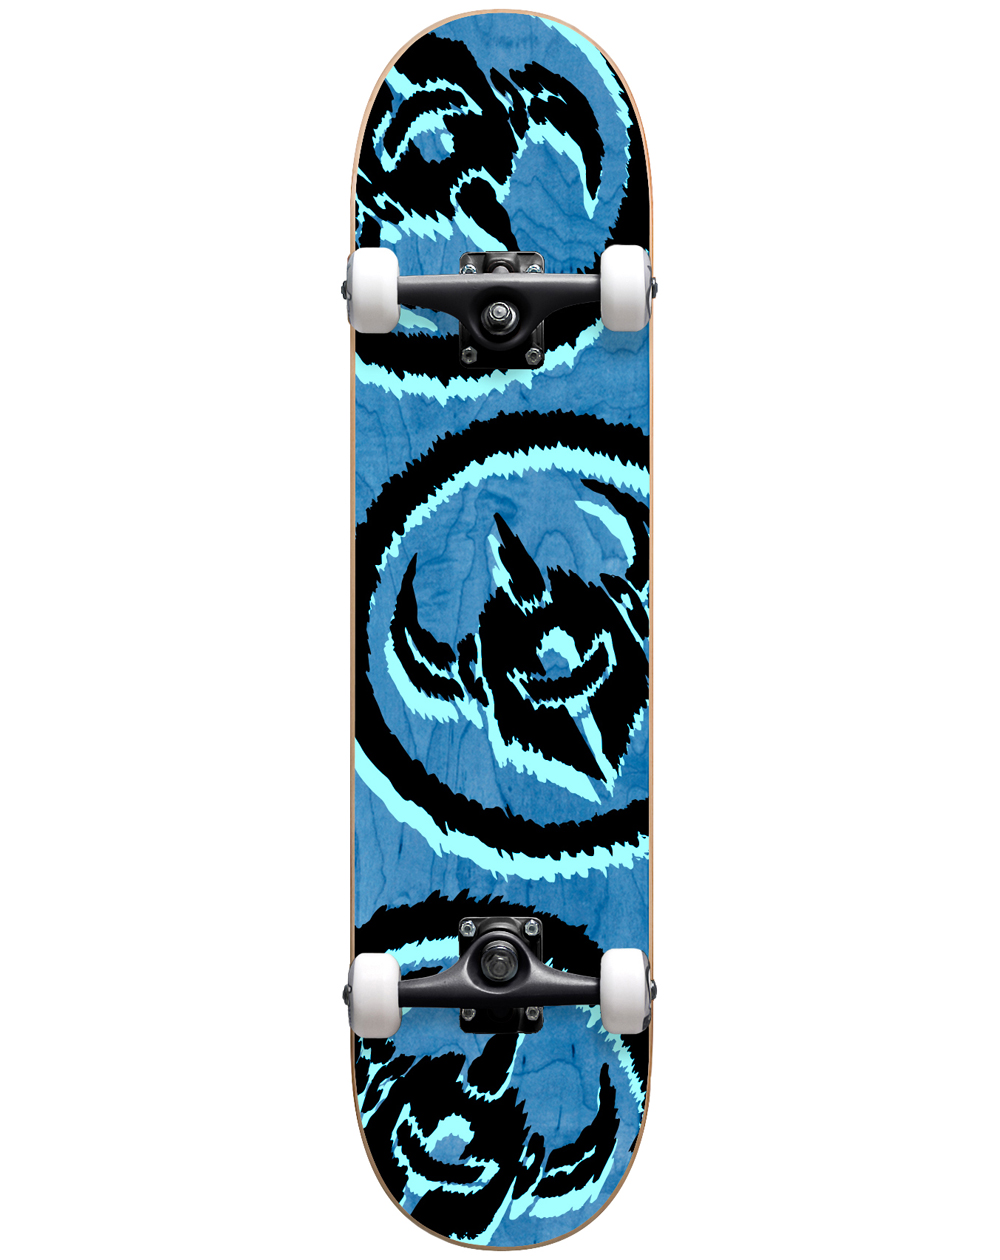 Darkstar Skateboard Complète Dissent 7.875" Blue